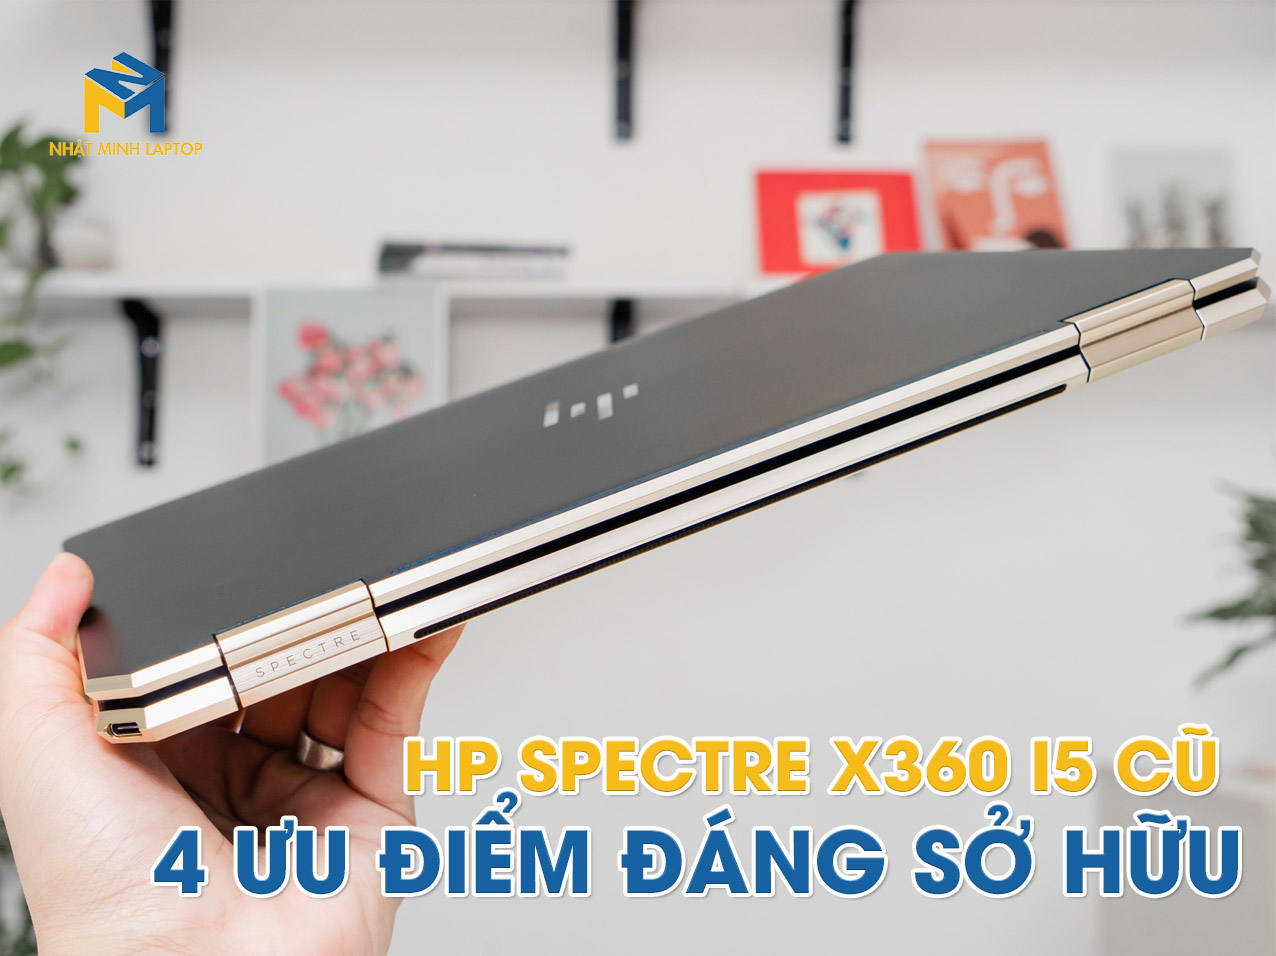 Laptop HP Spectre X360 i5 Cũ và 4 Ưu điểm đáng sở hữu